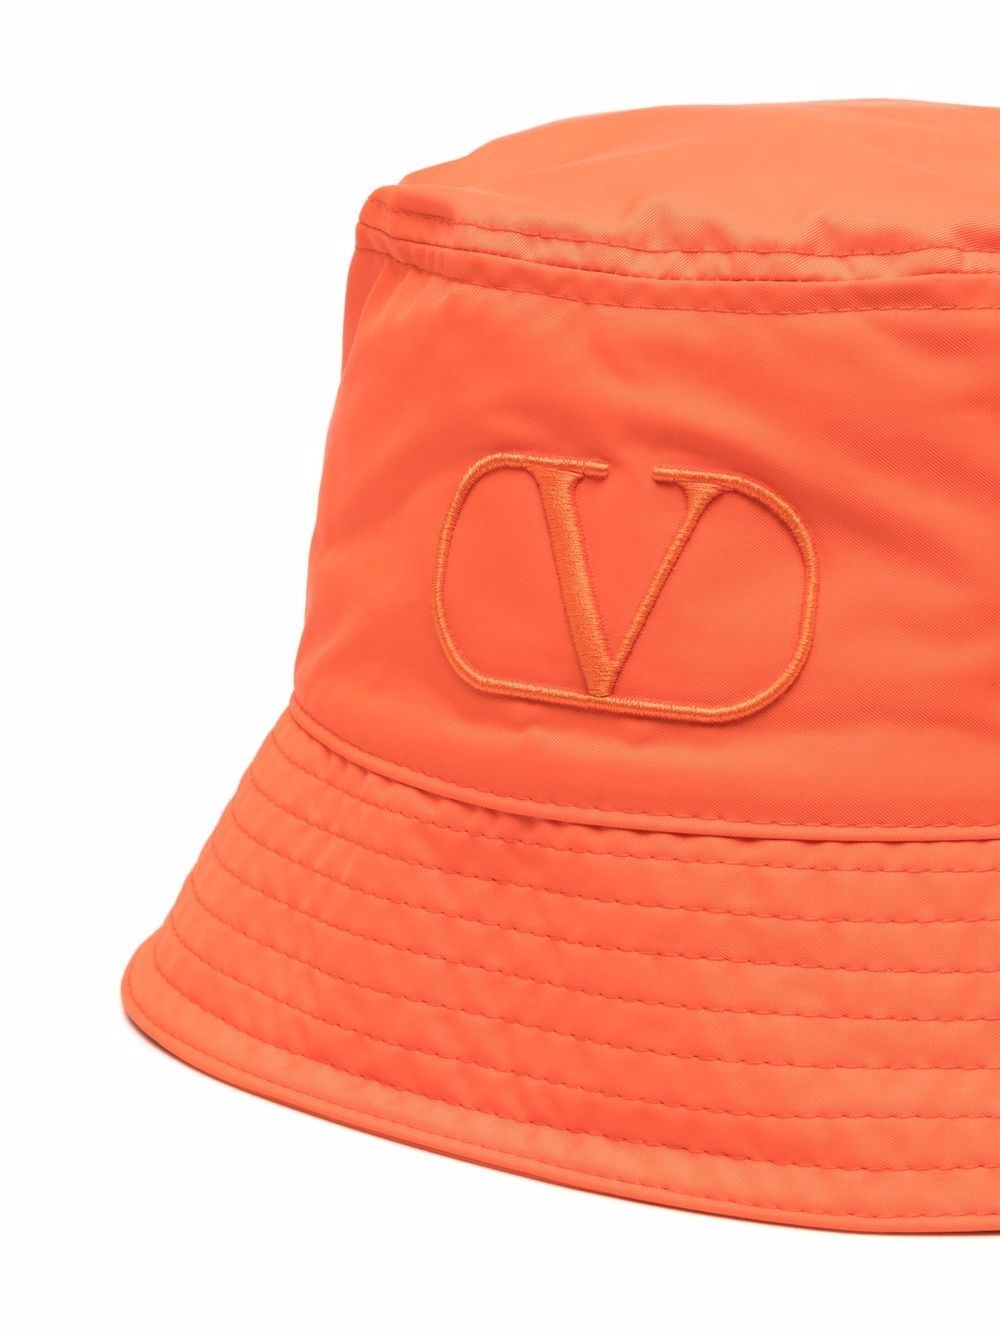 VLogo bucket hat - 2